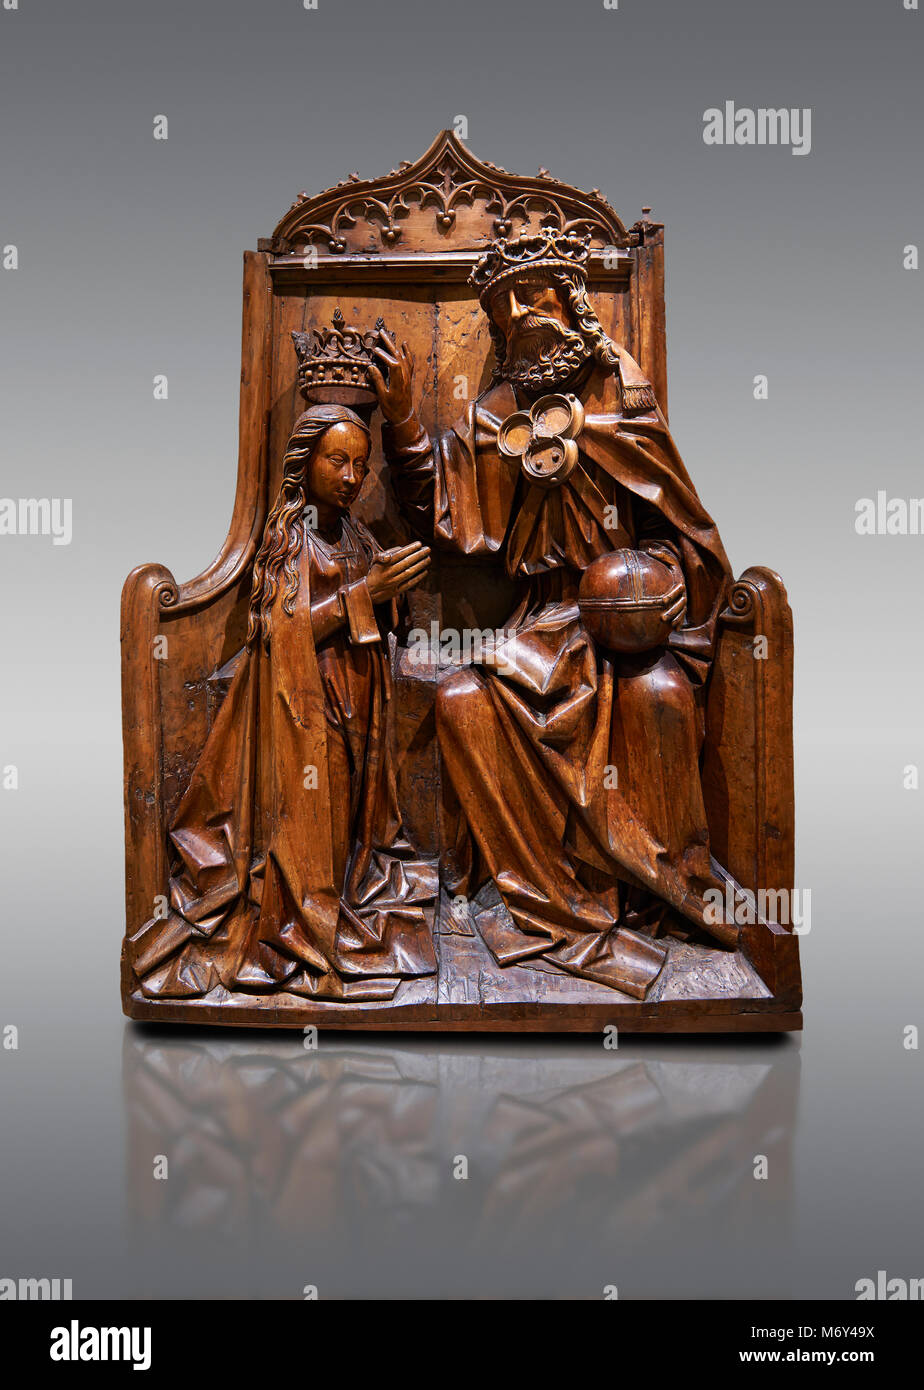 Bois de la sculpture gothique de secours le couronnement de de la Vierge Marie dans le sgchiool l'Europe centrale, de style fin du 15ème siècle. Musée national de Ca Banque D'Images